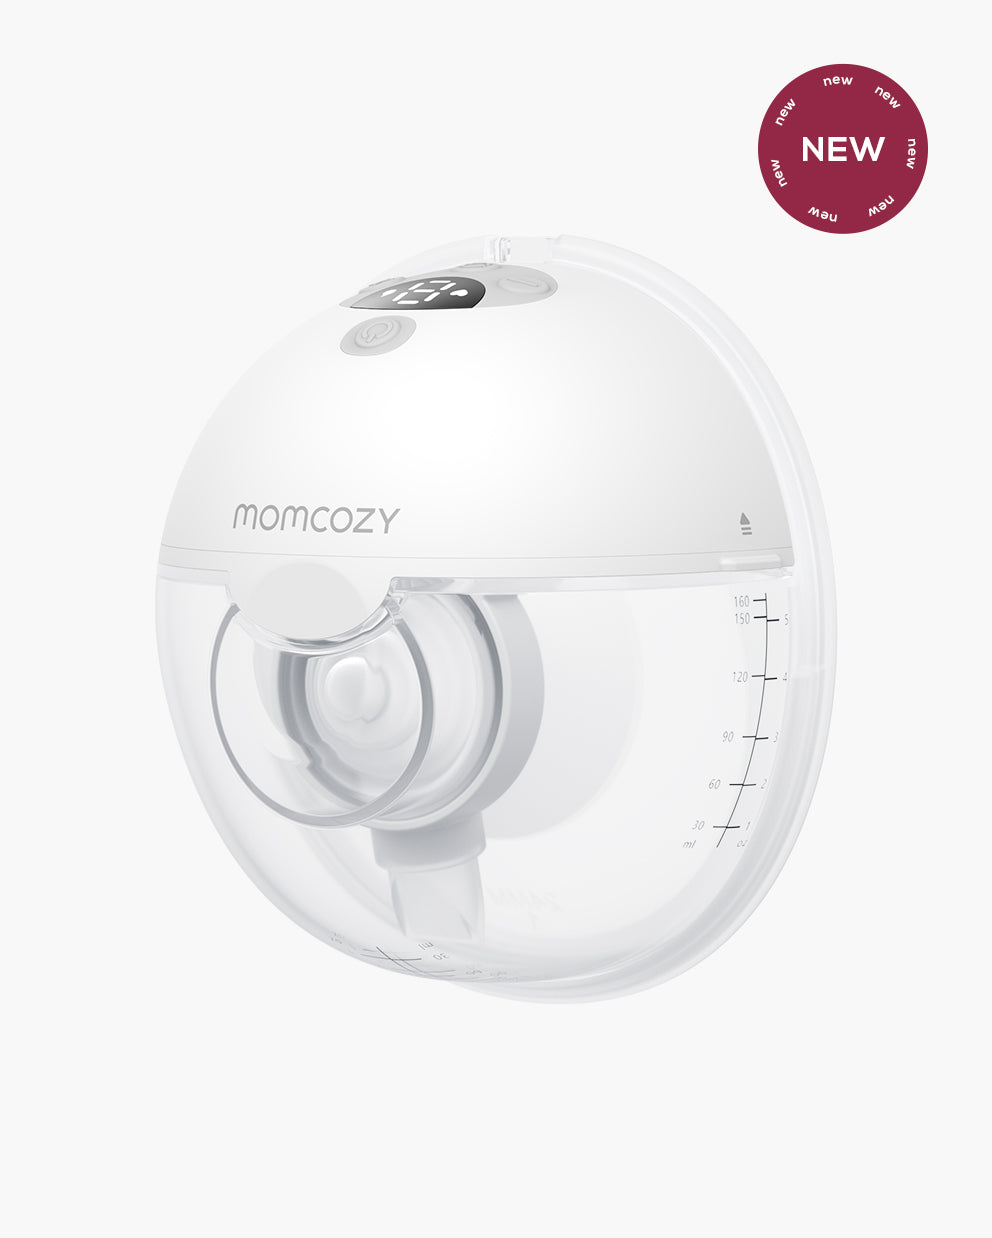 Momcozy 2- Pack Cameras BM01 5” LCD 1080p Pan & Tilt Video Baby Monitor Kit